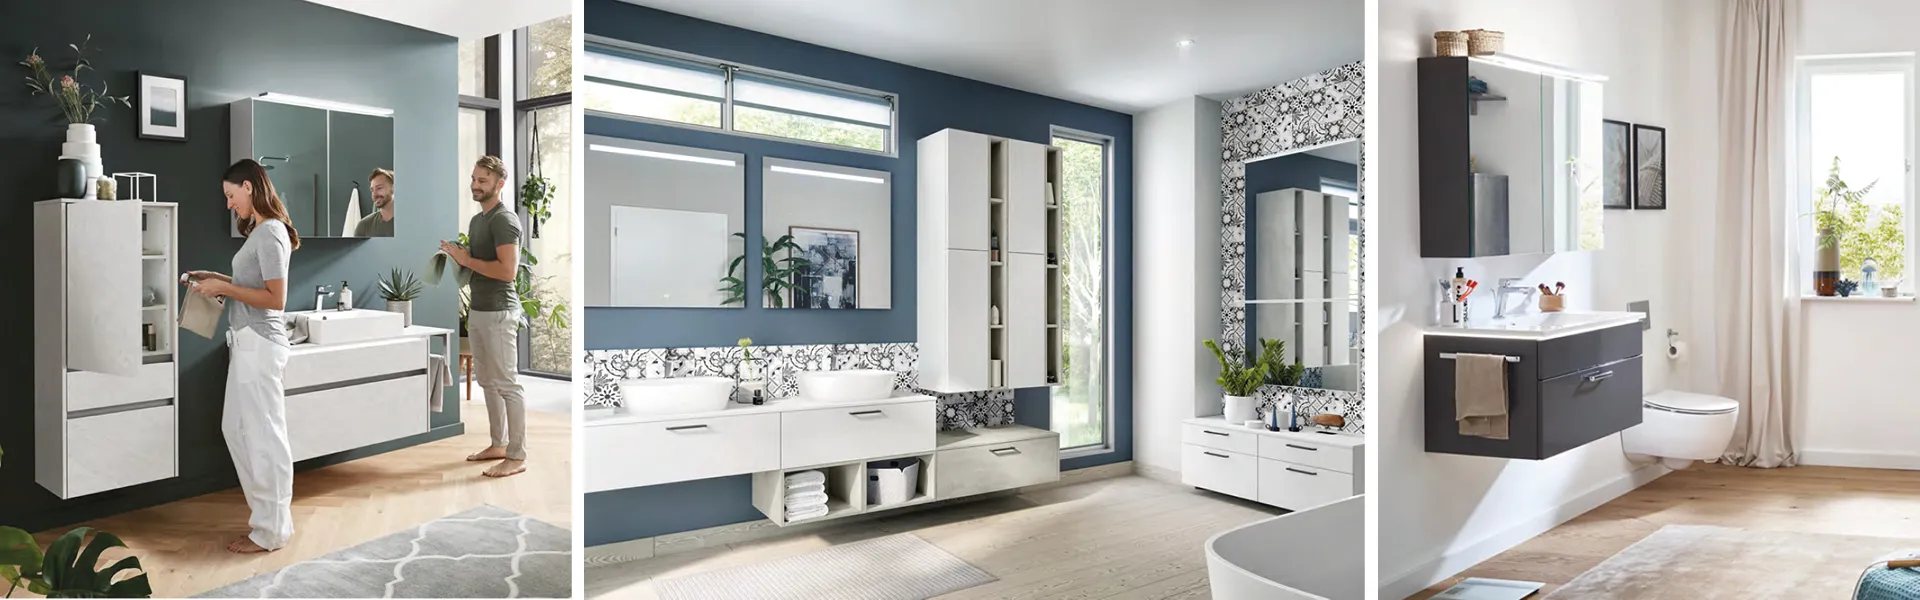 Frau und Mann im modernen Badezimmer mit grüner Wand und weißen Badmöbeln mit Spiegelschrank; helles freundliches Badezimmer in Weiß und Blau, modernes Badezimmer mit Spiegelschrank